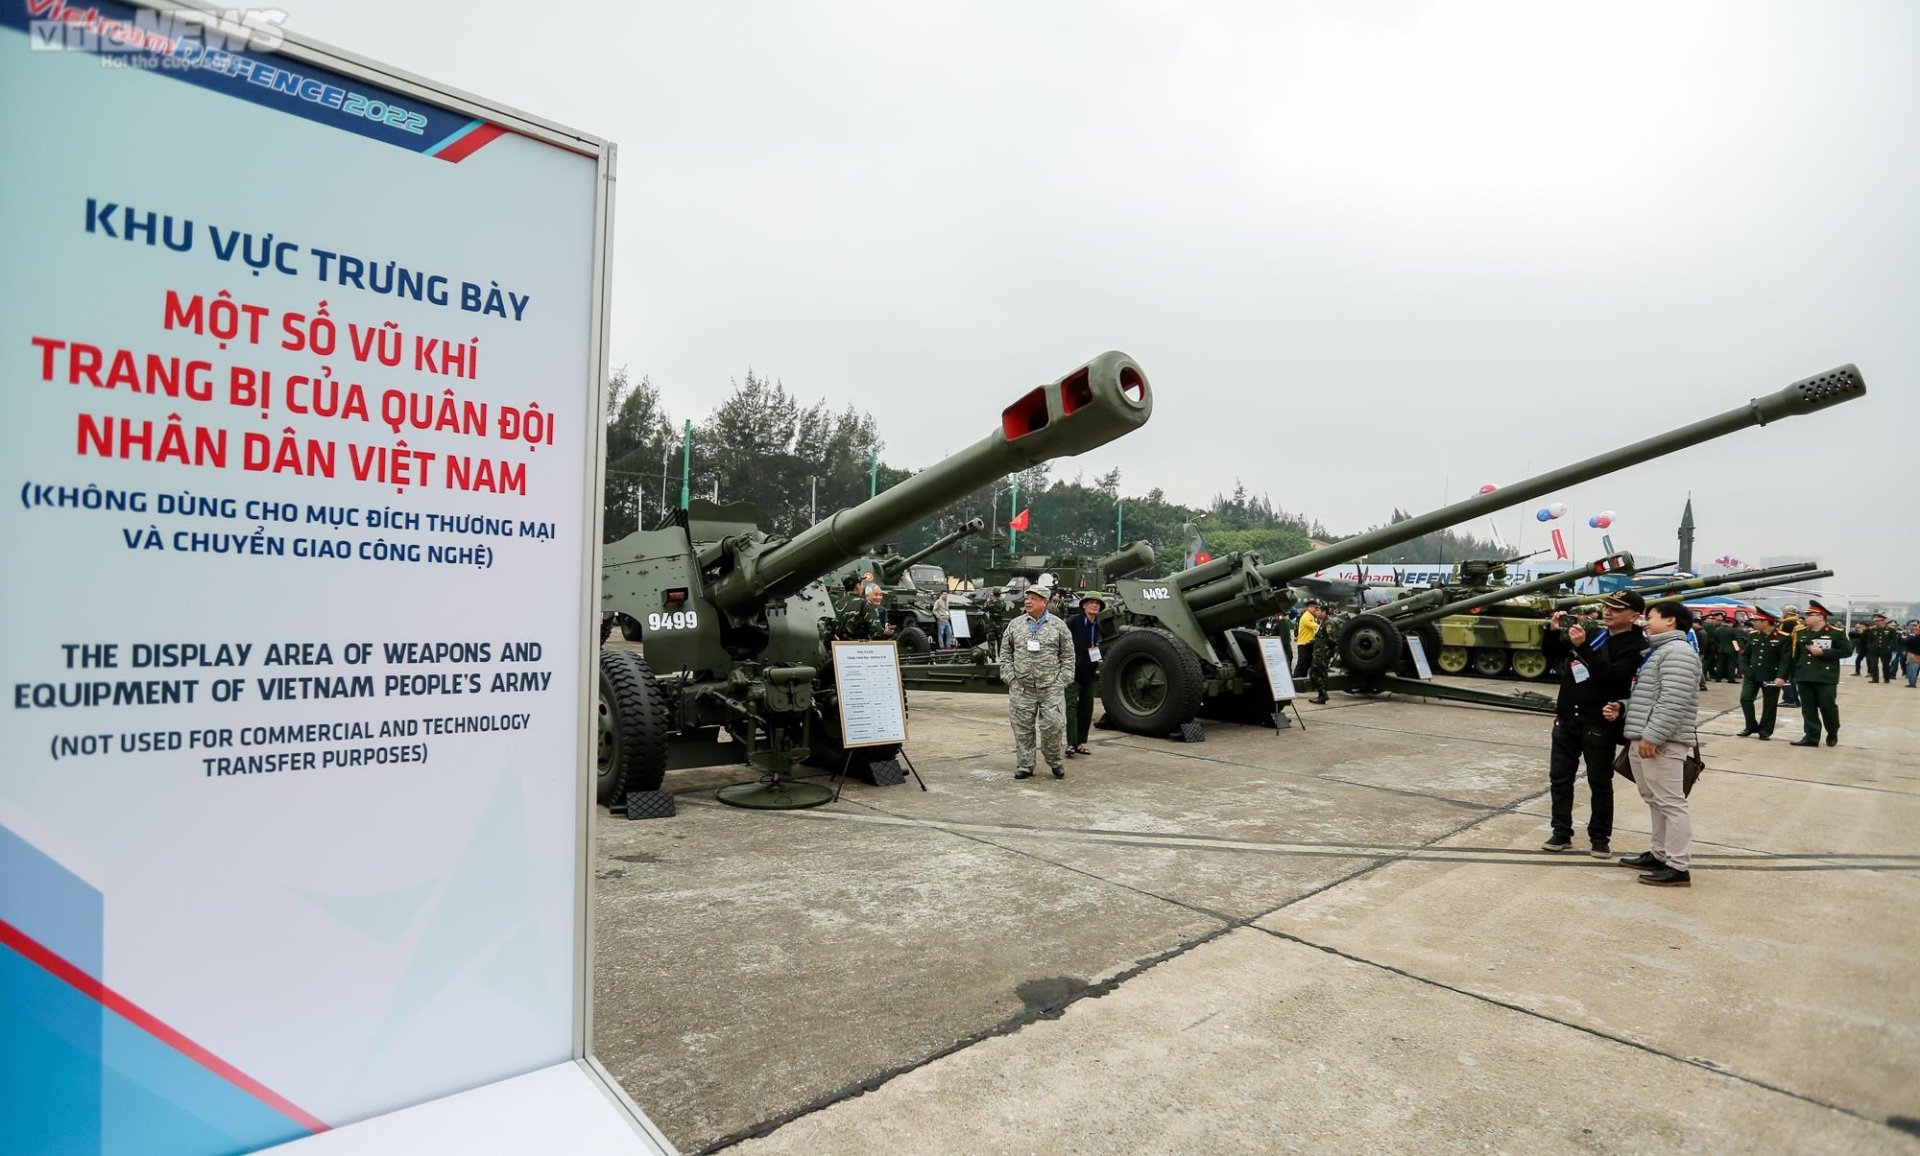 Cận cảnh vũ khí quân sự hiện đại của Việt Nam - 2